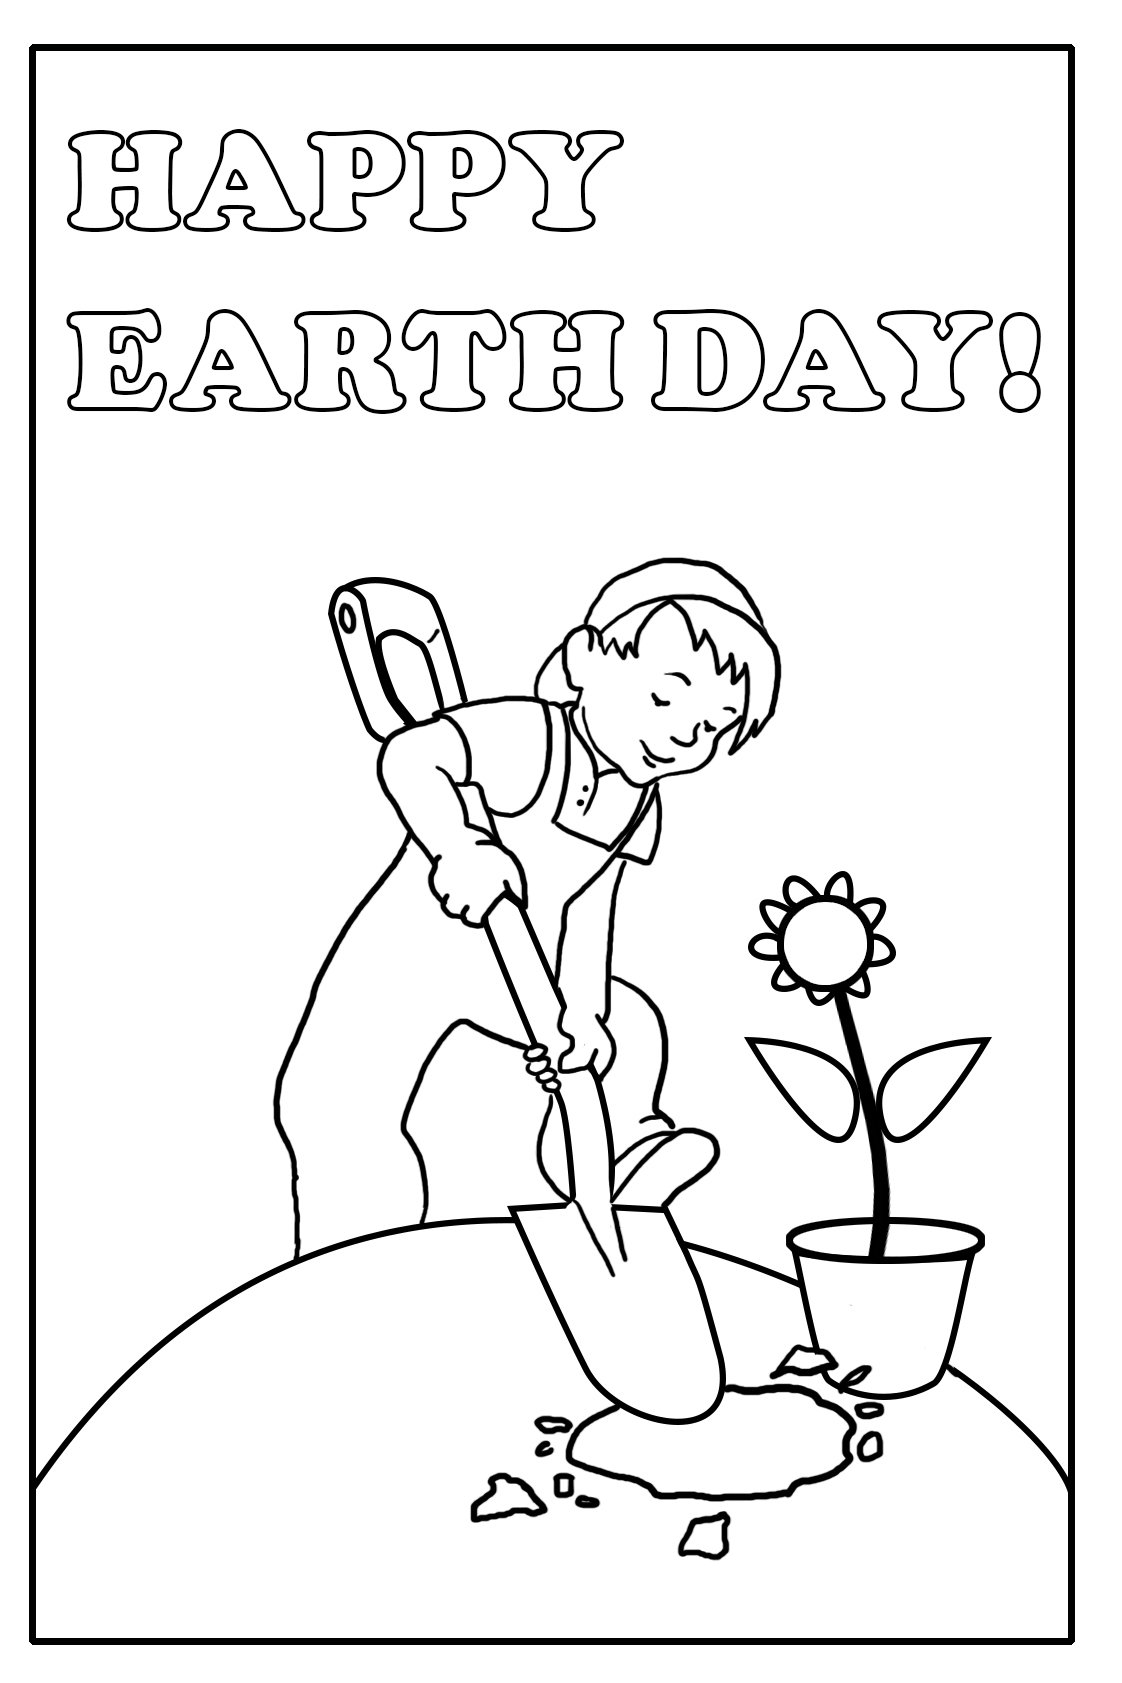 Happy Earth Day boy planting flower